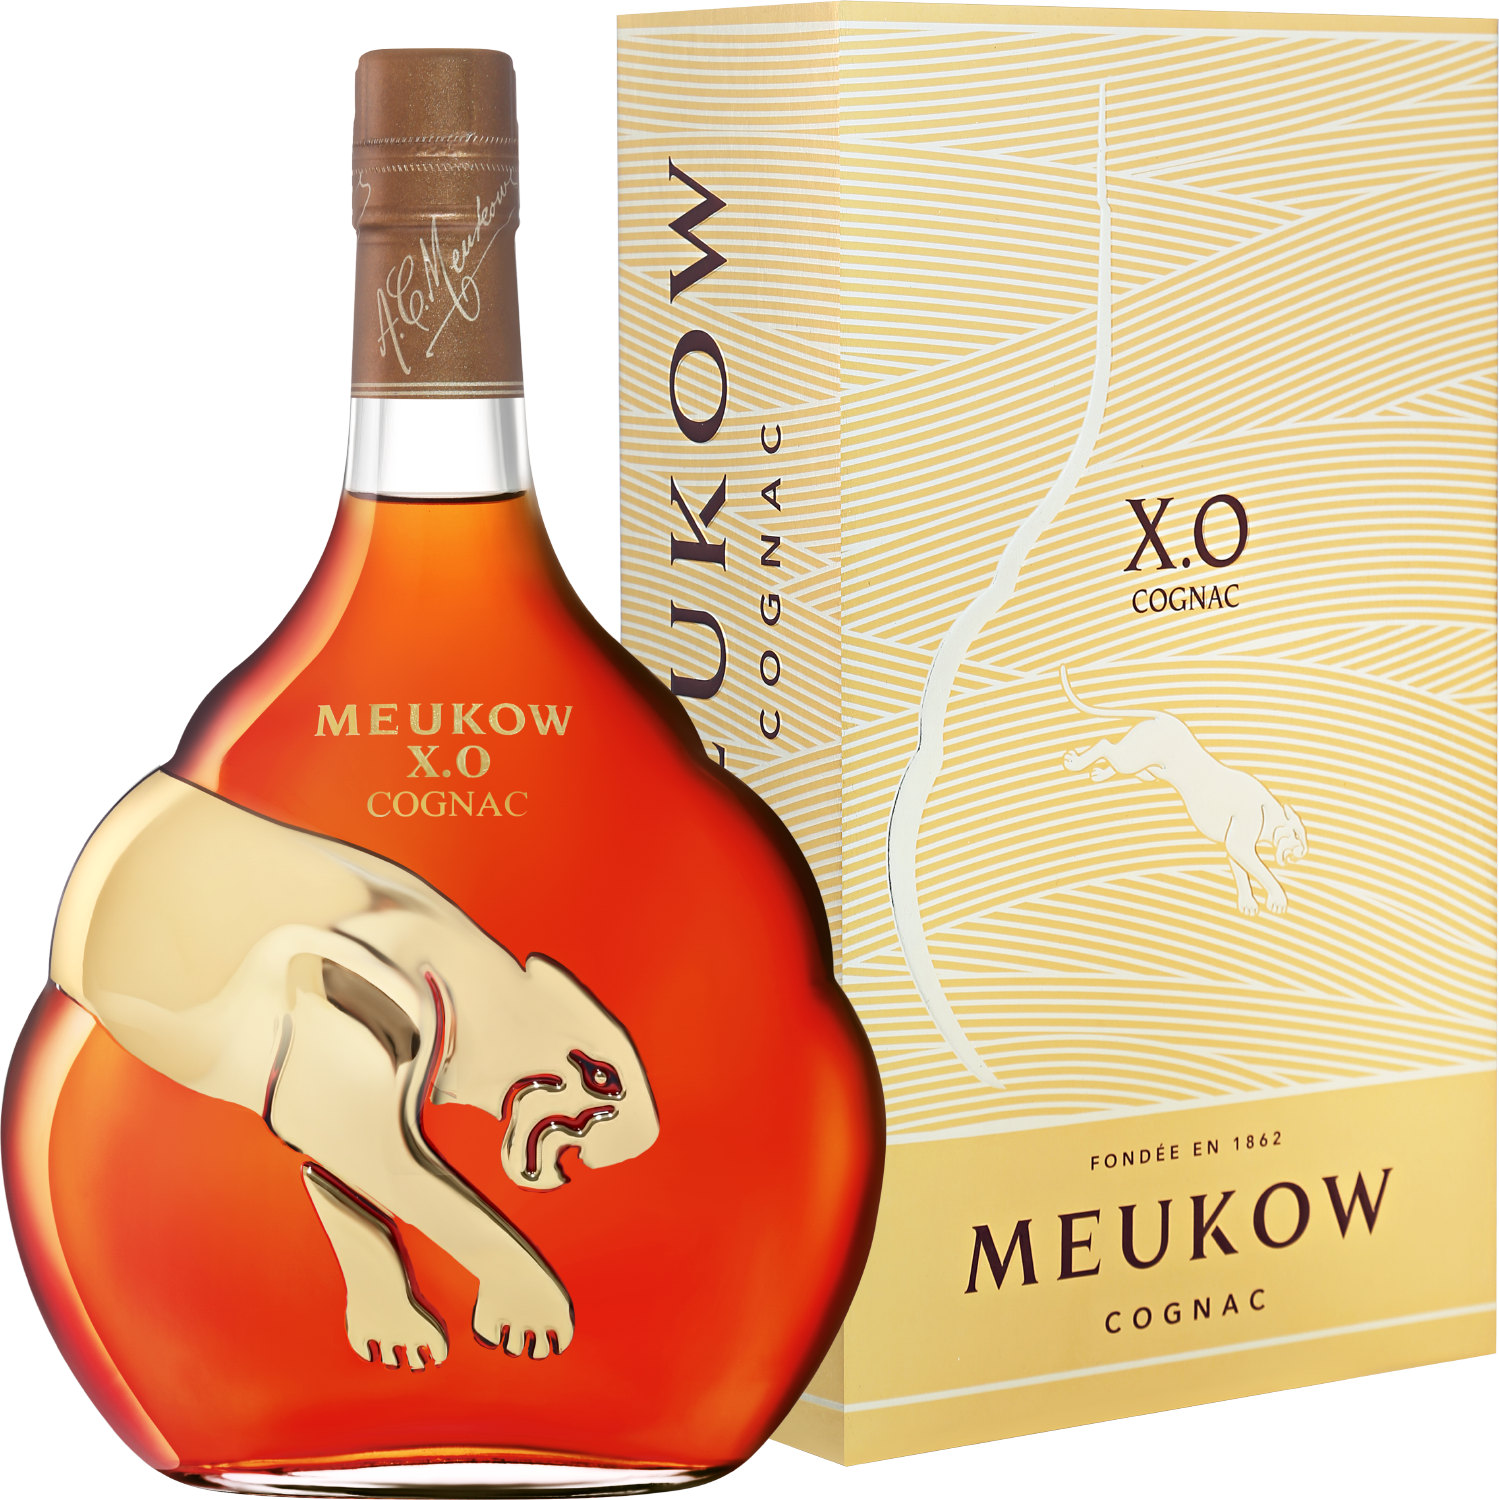 Meukow Cognac XO (gift box) tigranakert xo gift box